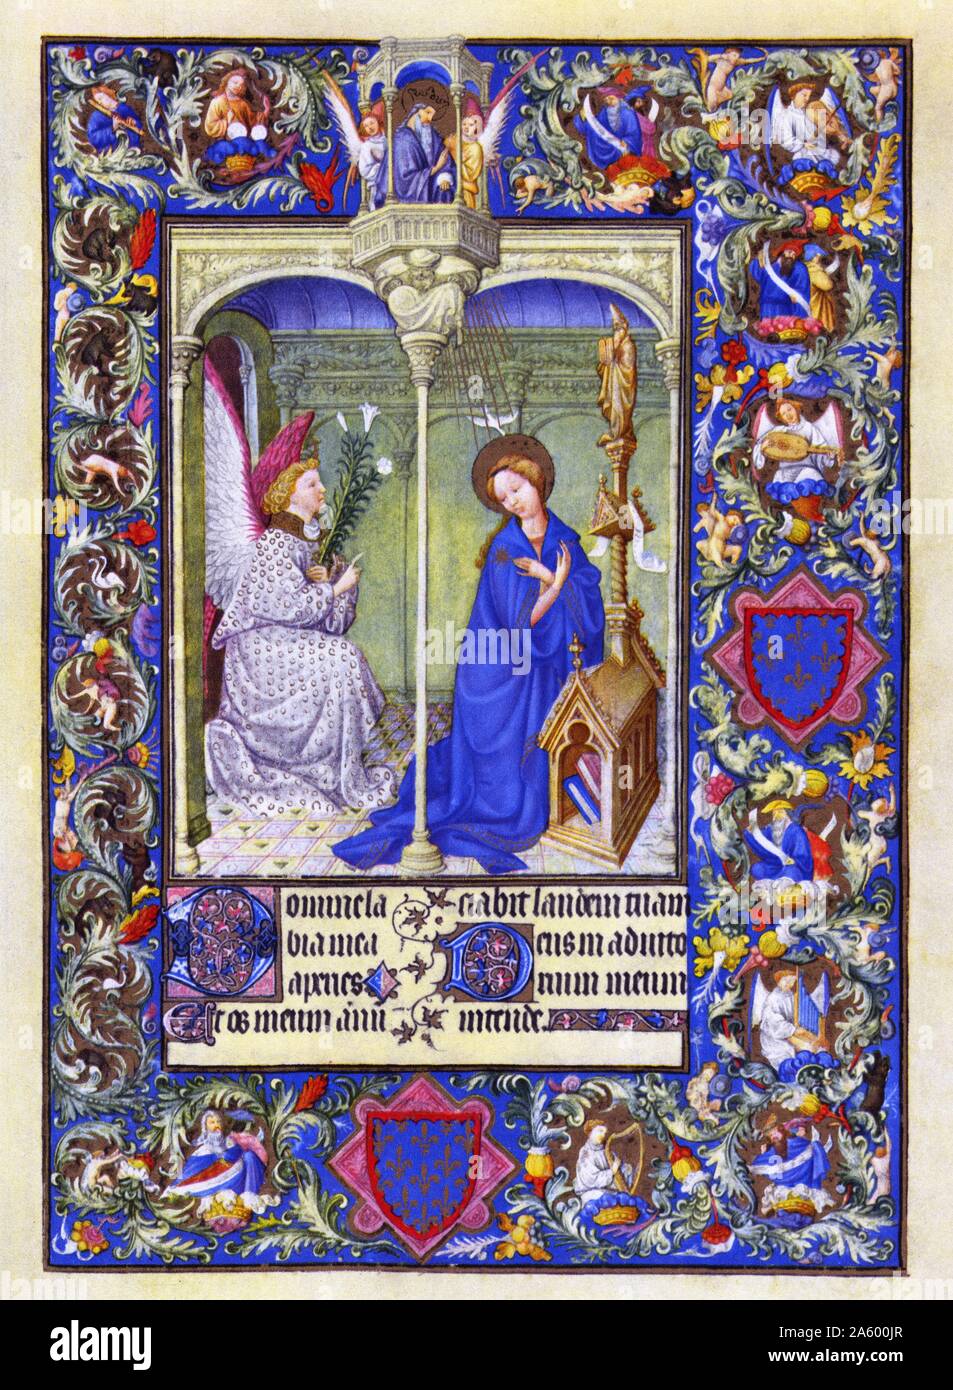 Darstellung der Verkündigung von Belles Heures von Jean de France, Duc de Berry (schöne Stunden) eine frühe 15. Jahrhundert illuminierte Handschrift Buch von Stunden Beleuchtung. Vom 15. Jahrhundert Stockfoto